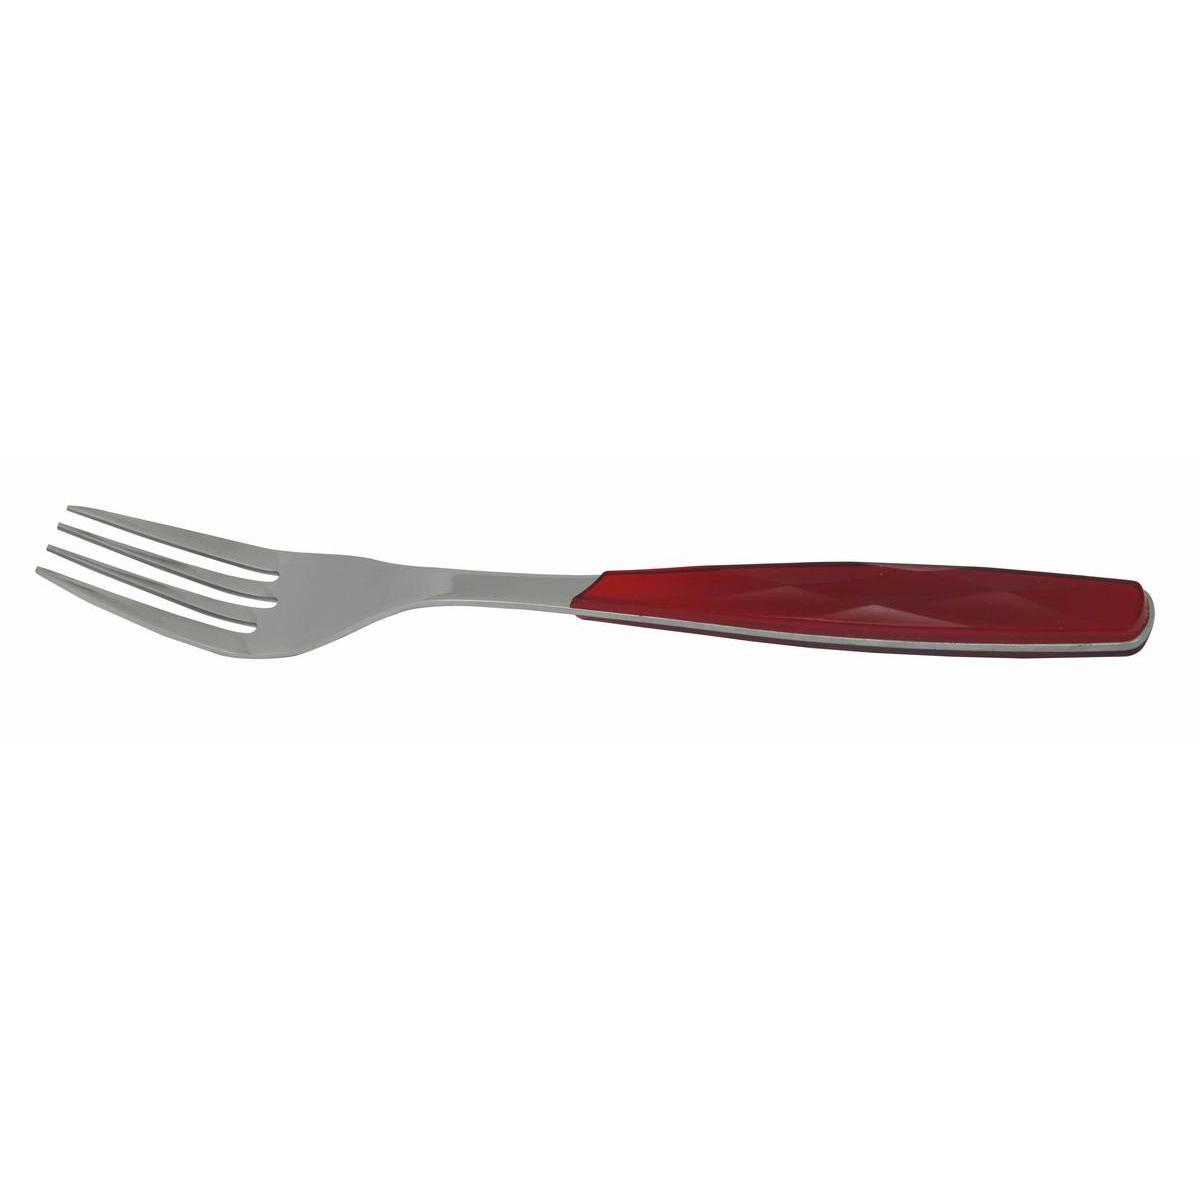 Fourchette table excellence - Acier inoxydable - 21,5 cm - Rouge